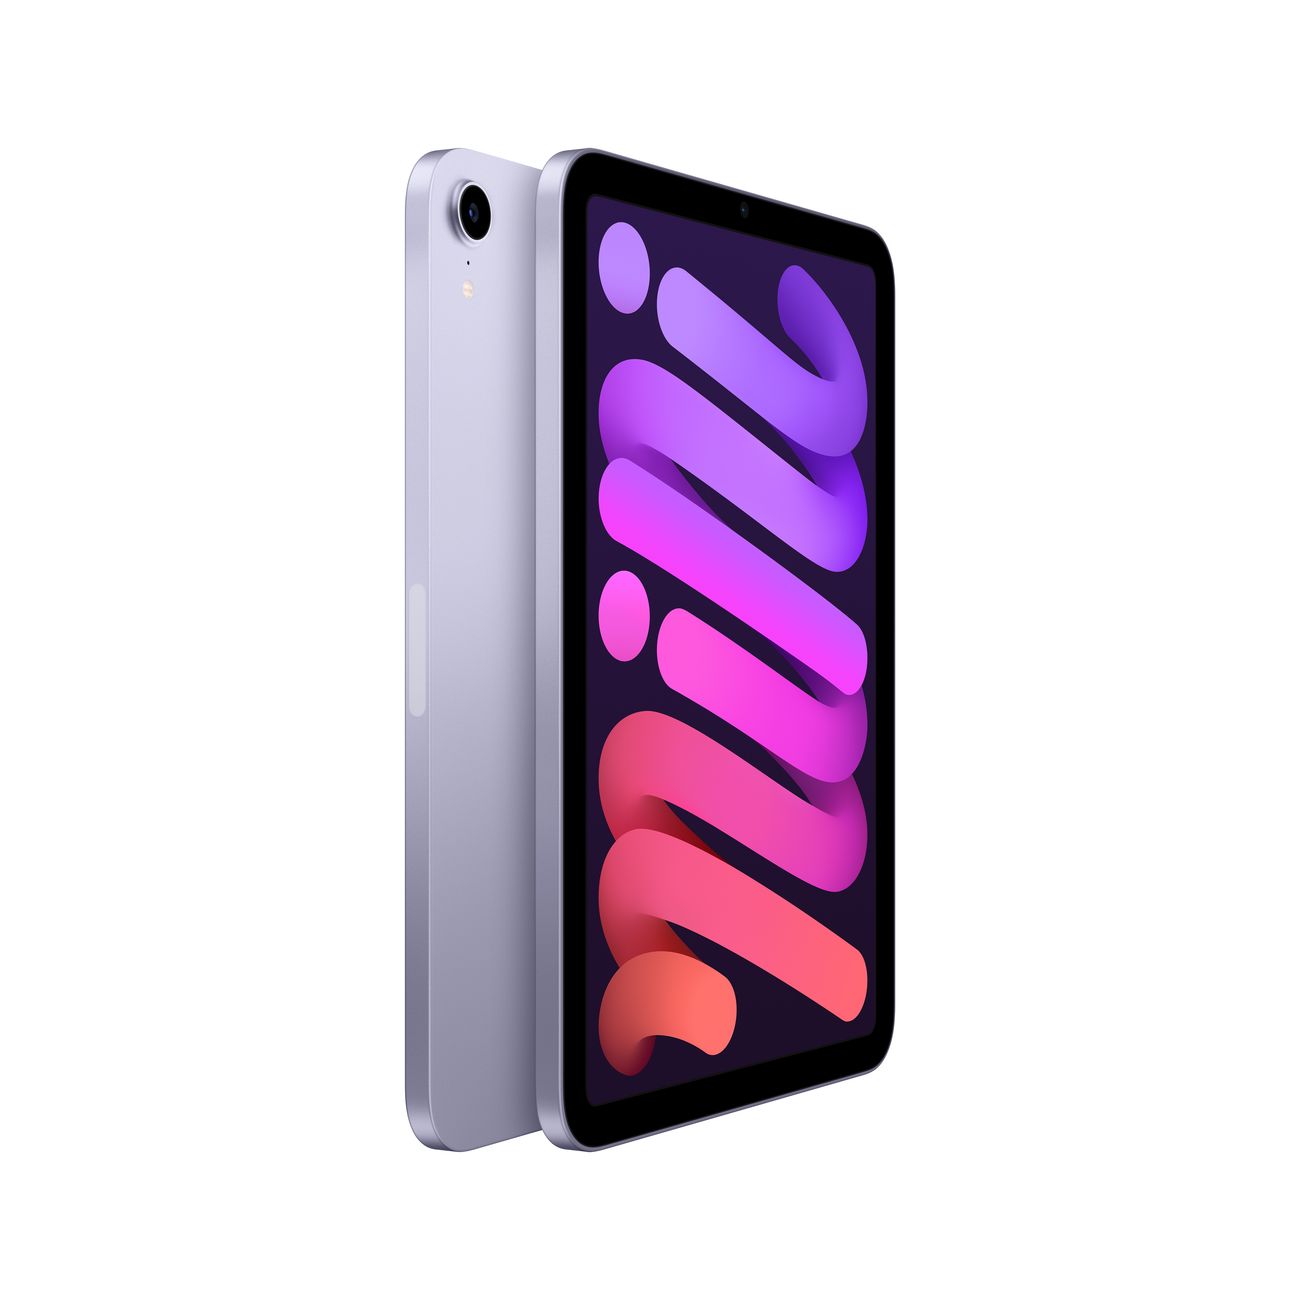 Купить планшет apple ipad mini wi-fi 256gb purple (mk7x3) Apple iPad mini в официальном магазине Apple, Samsung, Xiaomi. iPixel.ru Купить, заказ, кредит, рассрочка, отзывы,  характеристики, цена,  фотографии, в подарок.